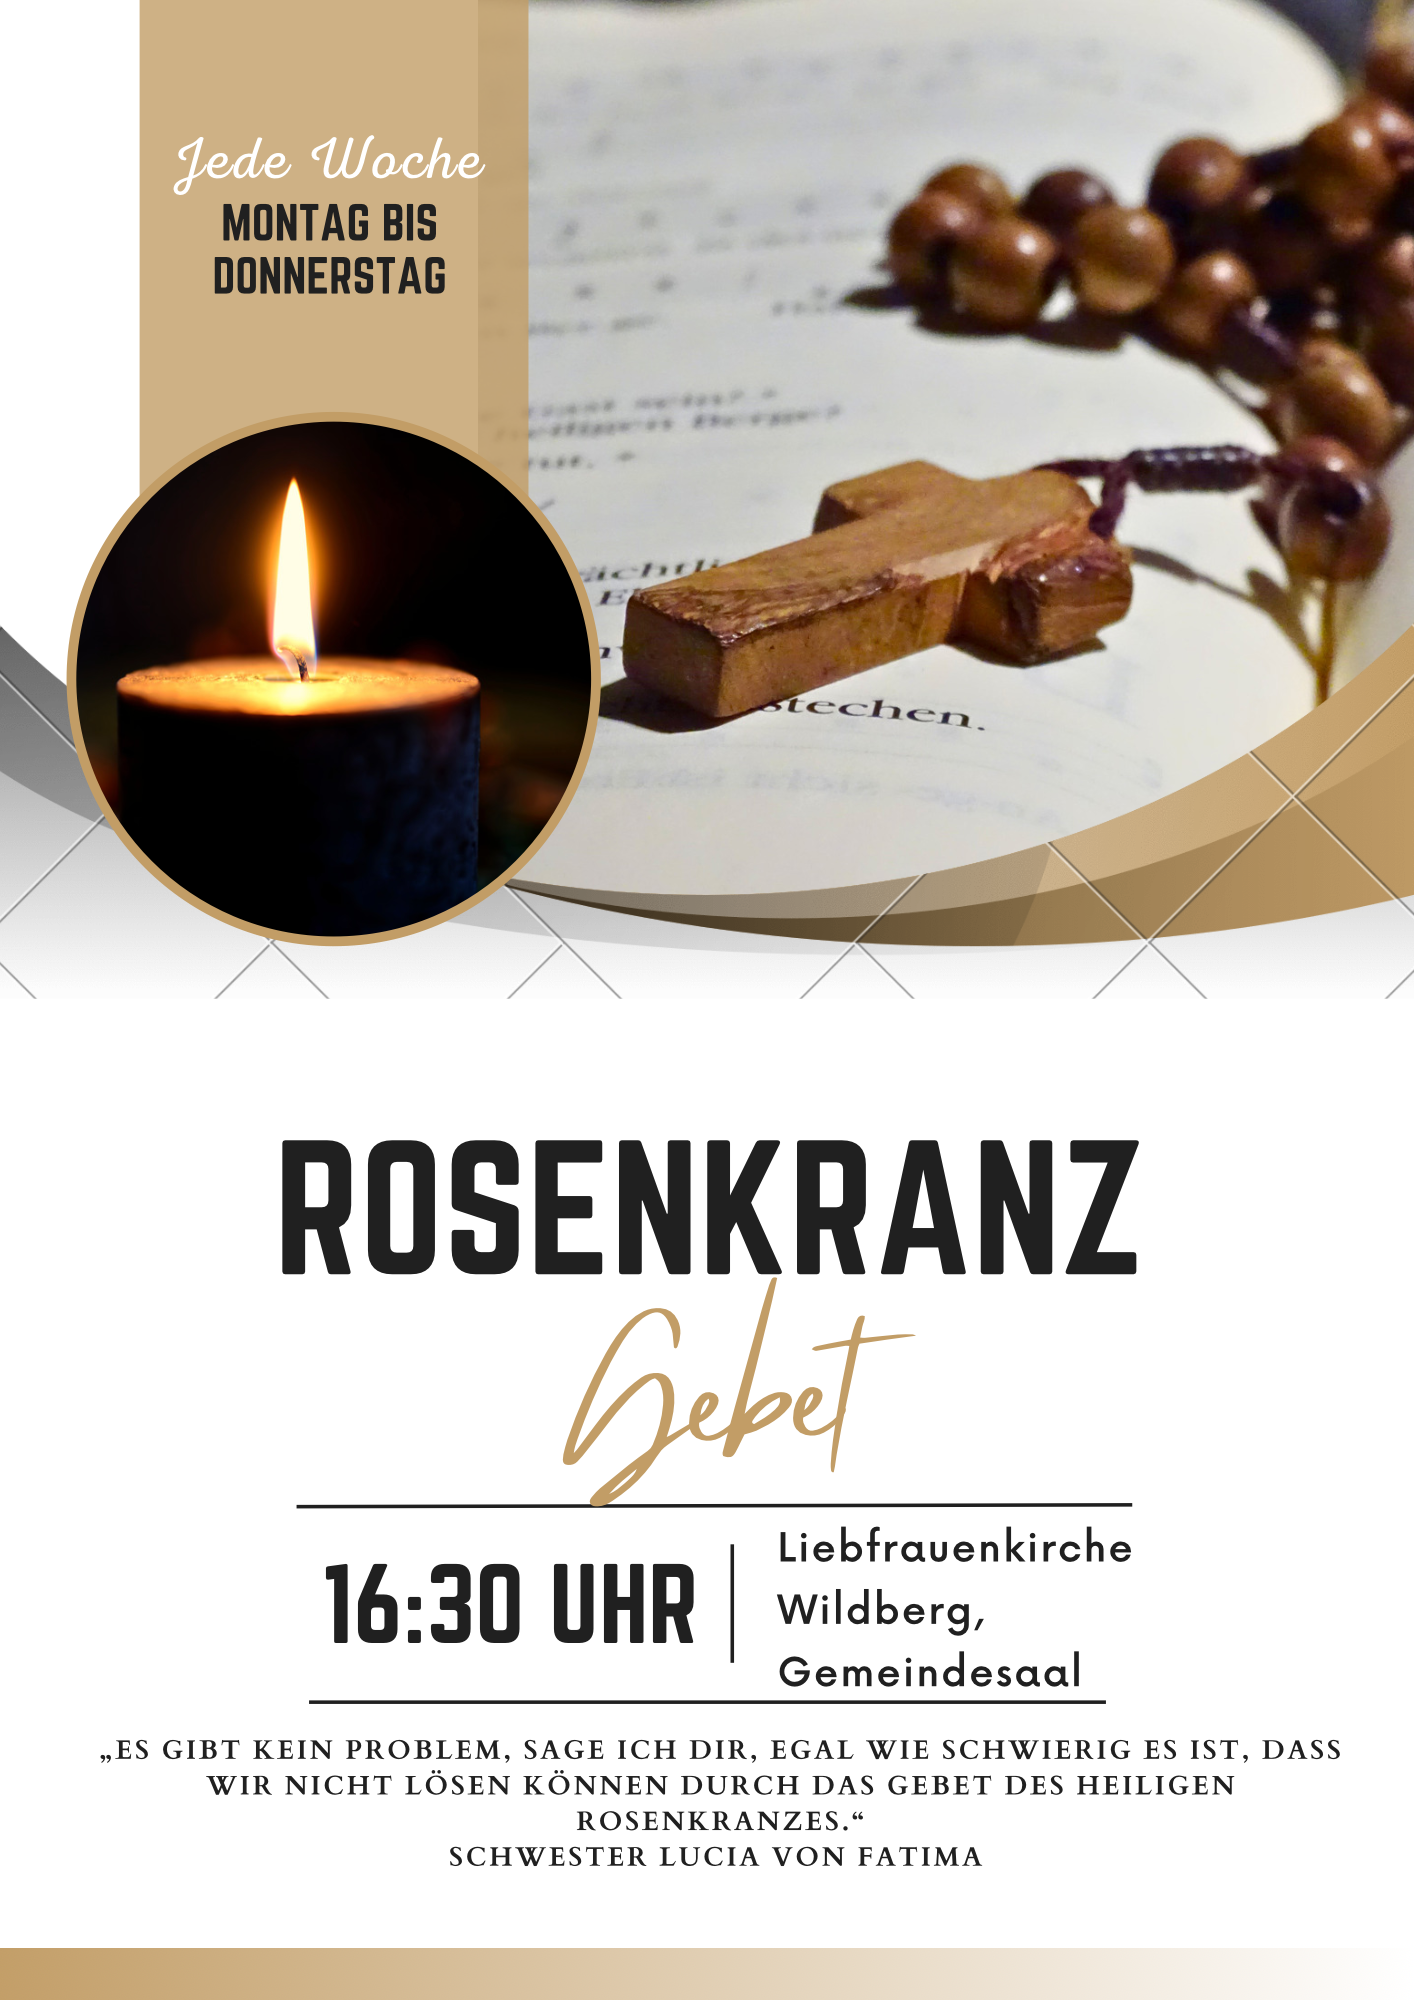 Rosenkranz jede Woche von Montag bis Donnerstag um 16:30 Uhr in Wildberg